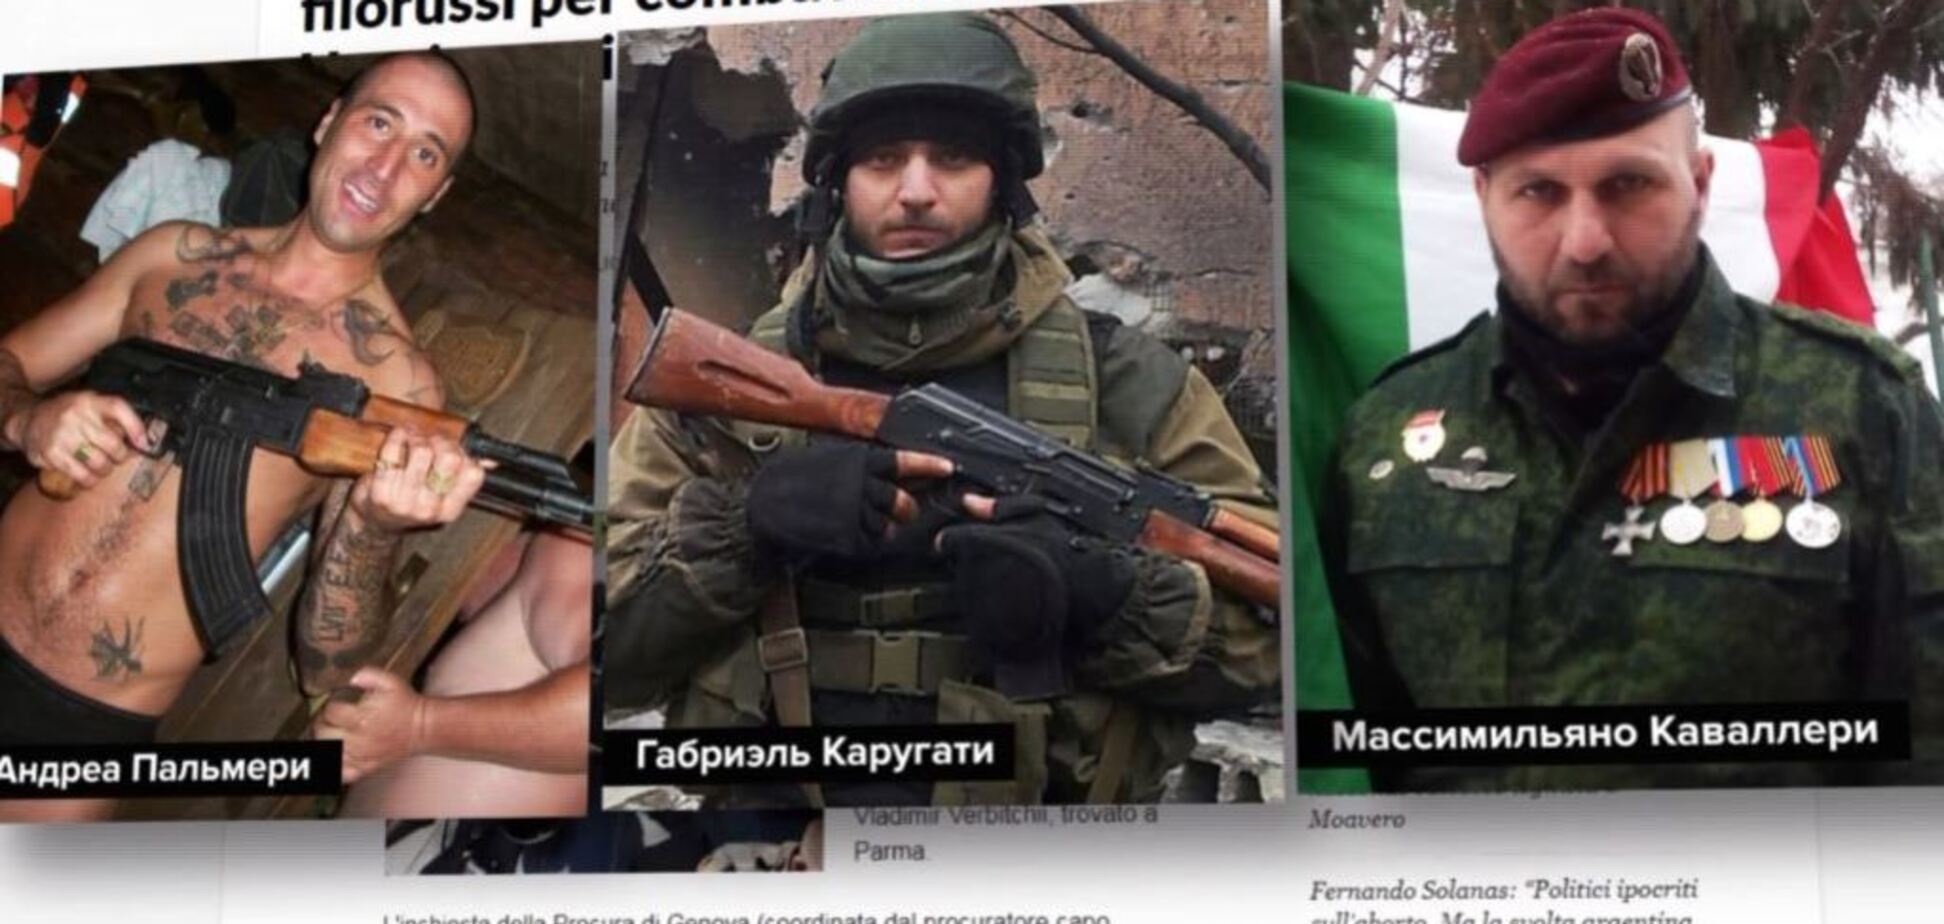 Убивали украинцев за 400 евро: стало известно, как в Италии вербовали террористов 'Л/ДНР'